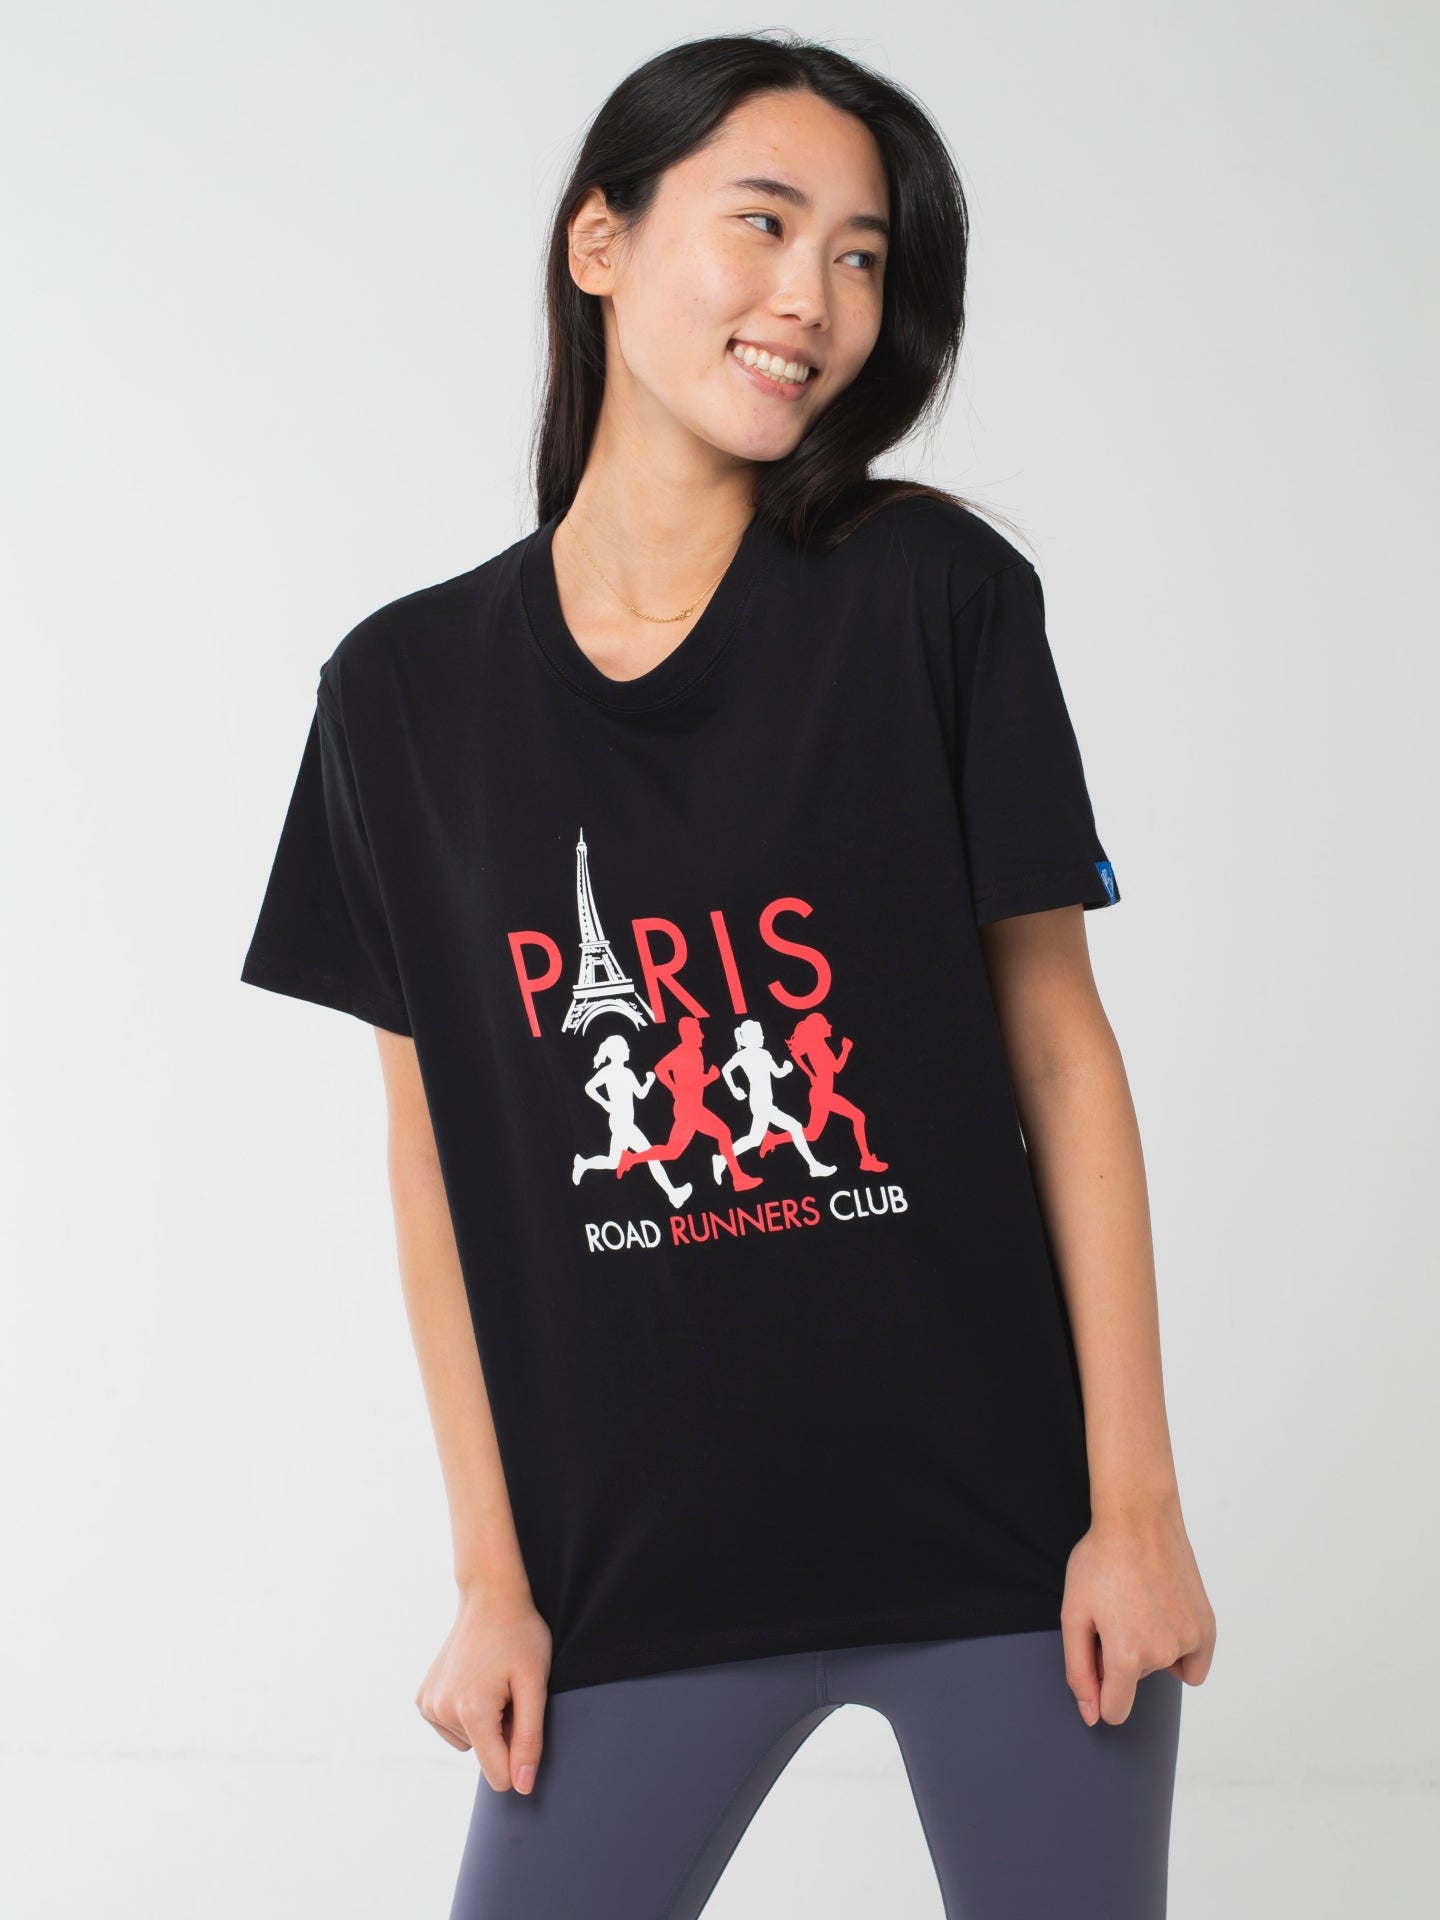 Paris Runners Club Tee Black